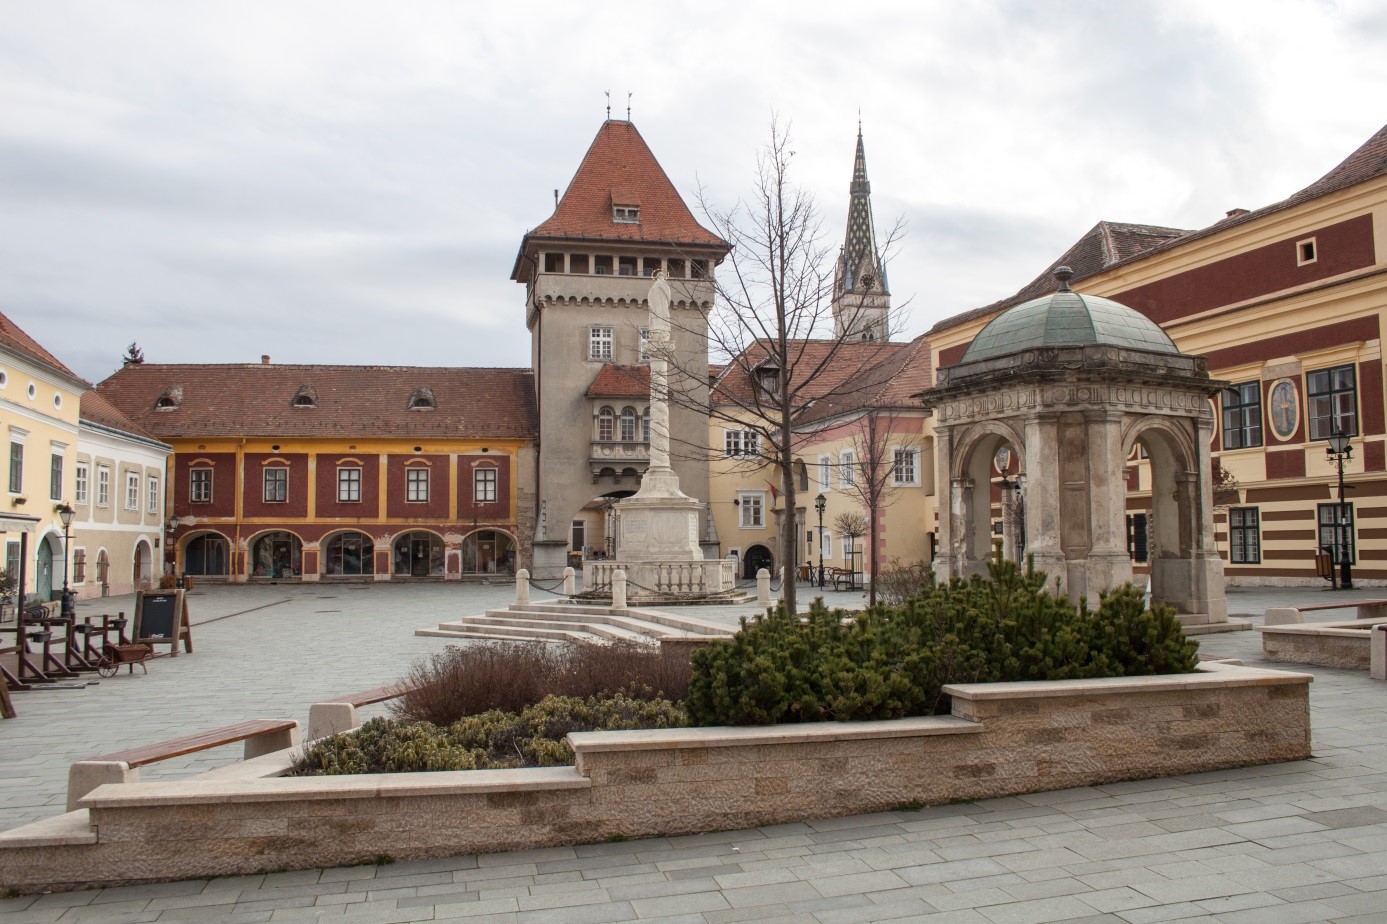 Kőszeg city centre